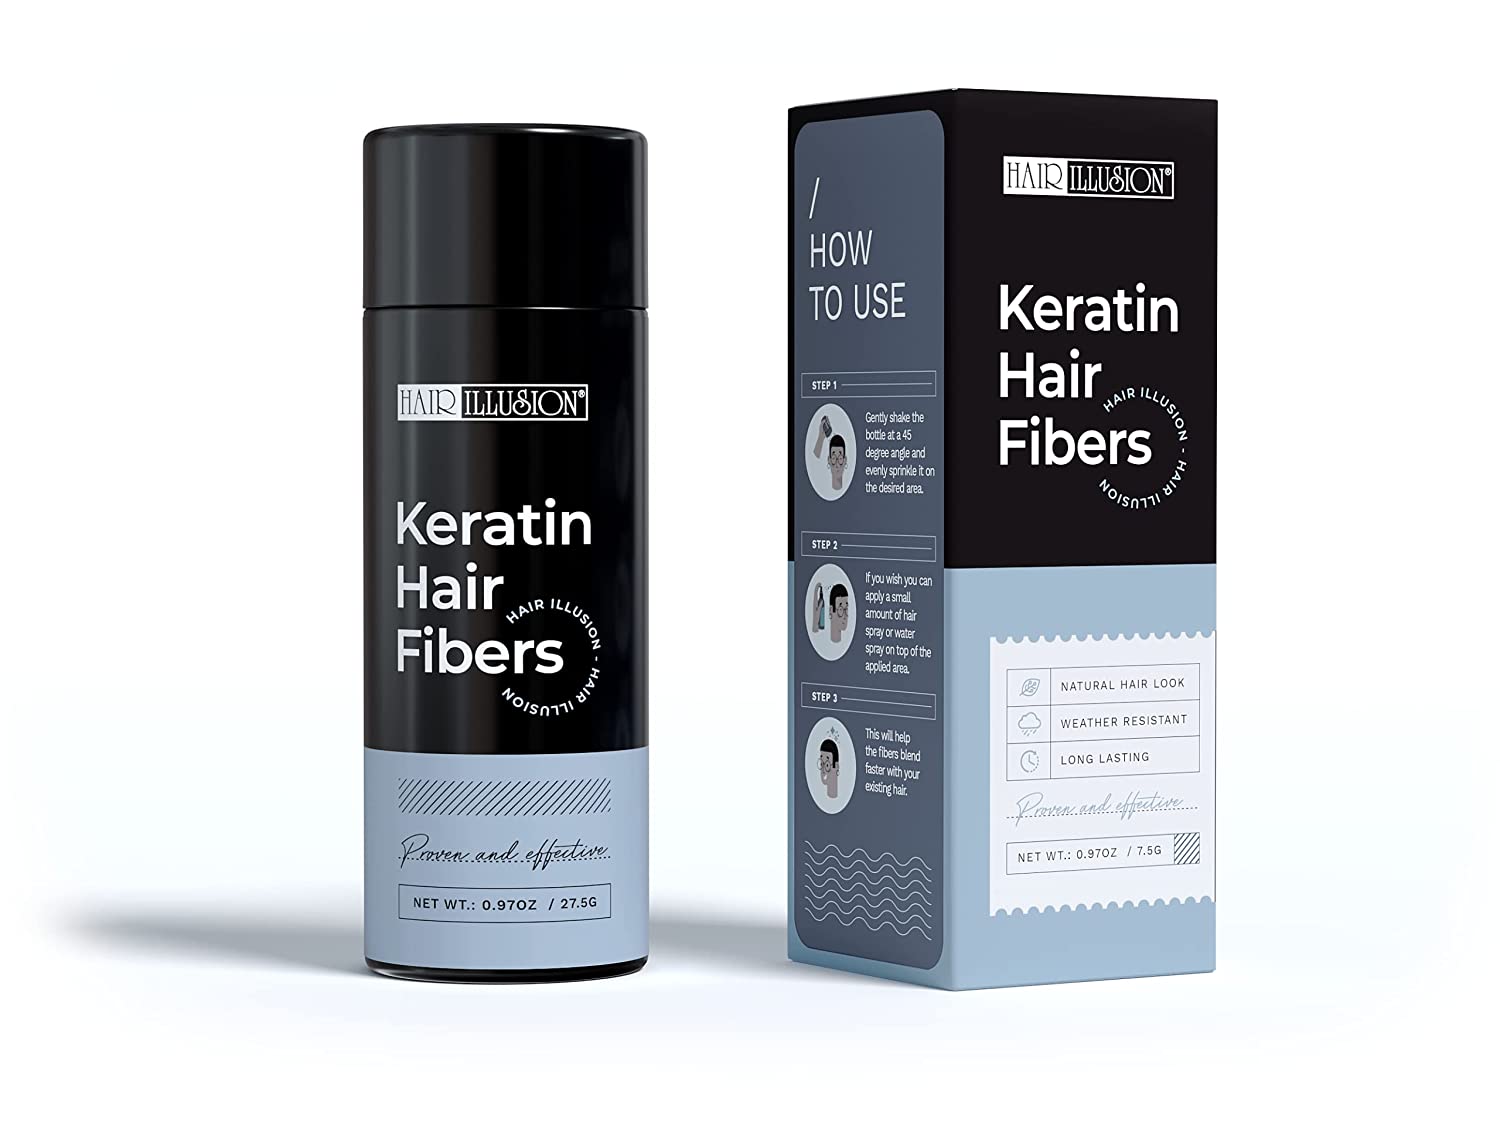 Hair Illusion Keratin Hair Building Fibers 27.5 g